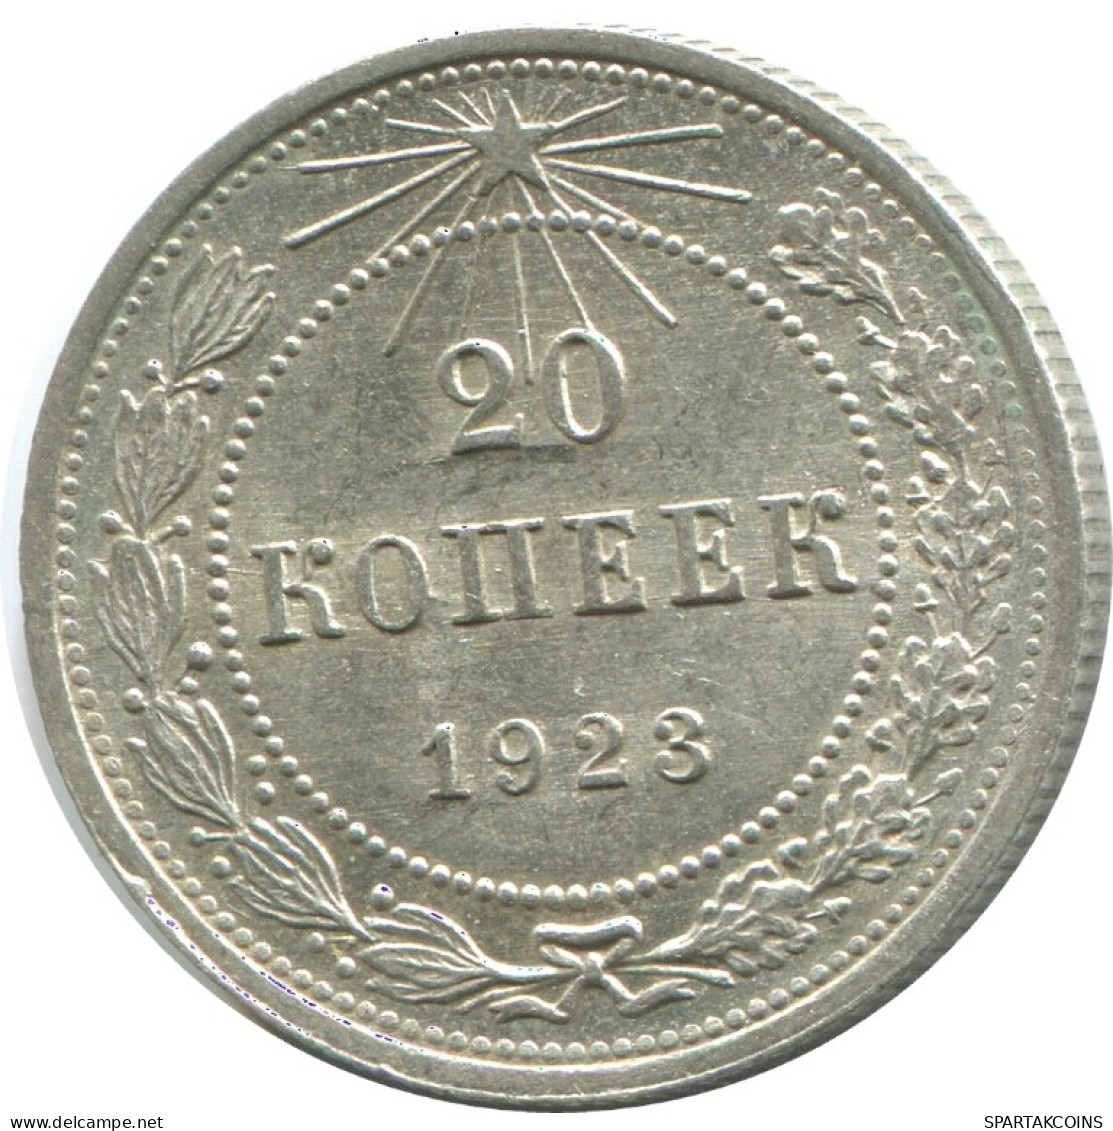 20 KOPEKS 1923 RUSIA RUSSIA RSFSR PLATA Moneda HIGH GRADE #AF471.4.E.A - Russland